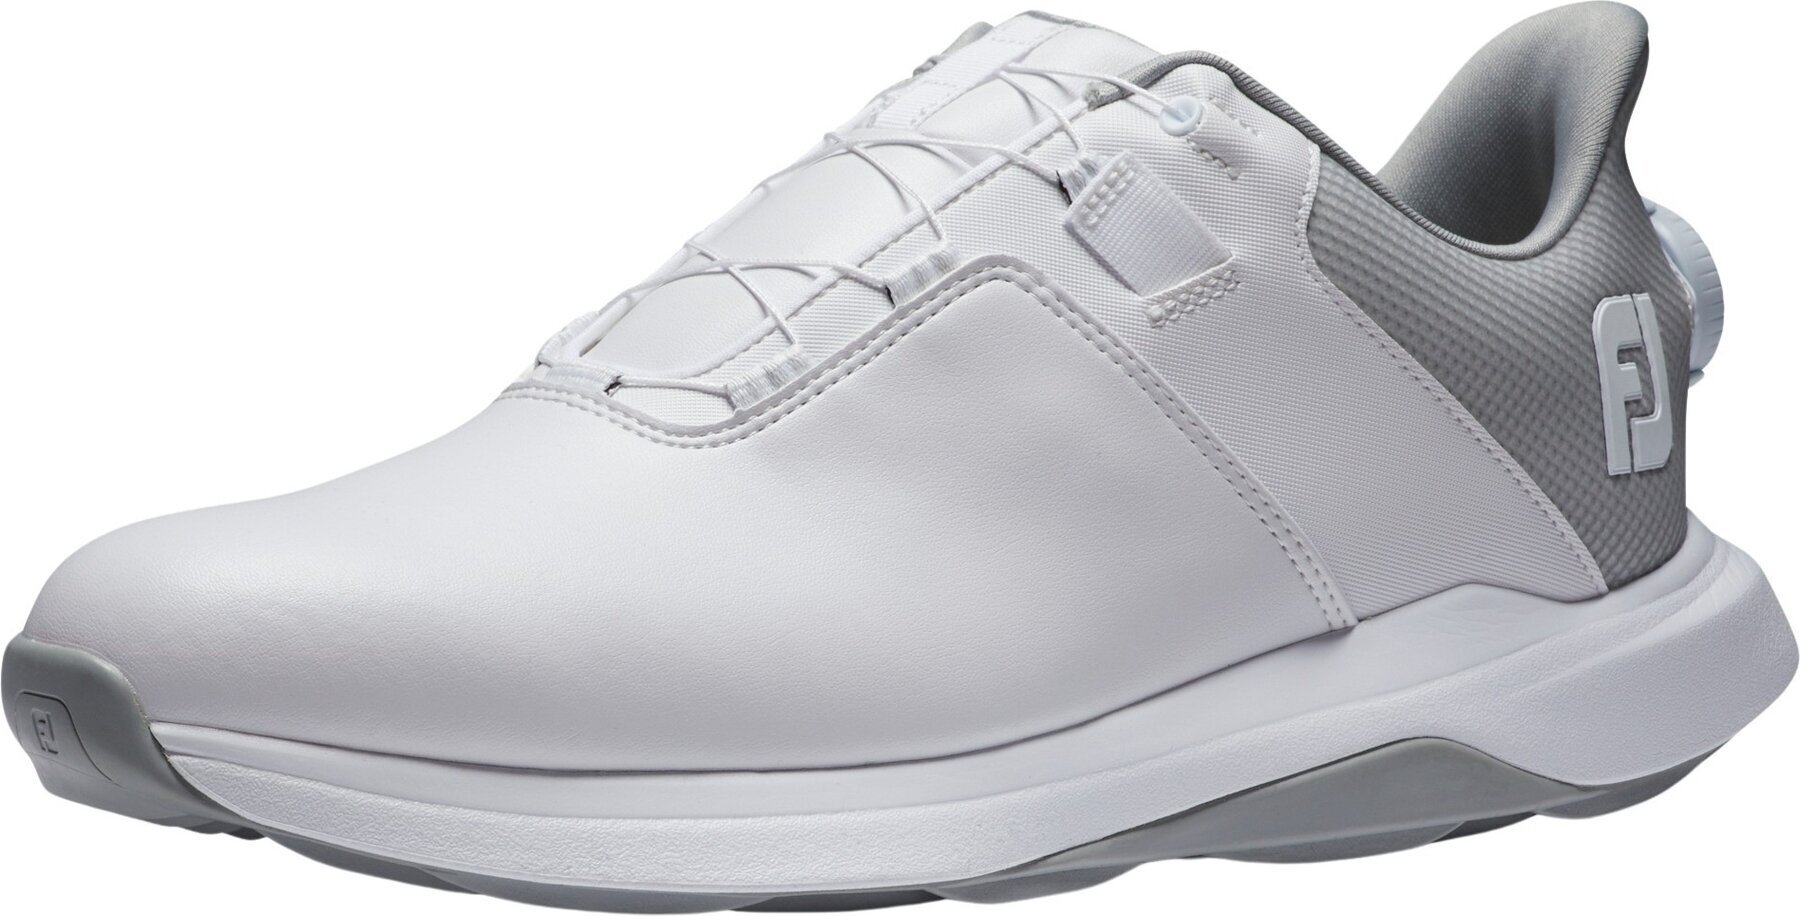 Calçado de golfe para homem Footjoy ProLite Mens Golf Shoes White/White/Grey 41